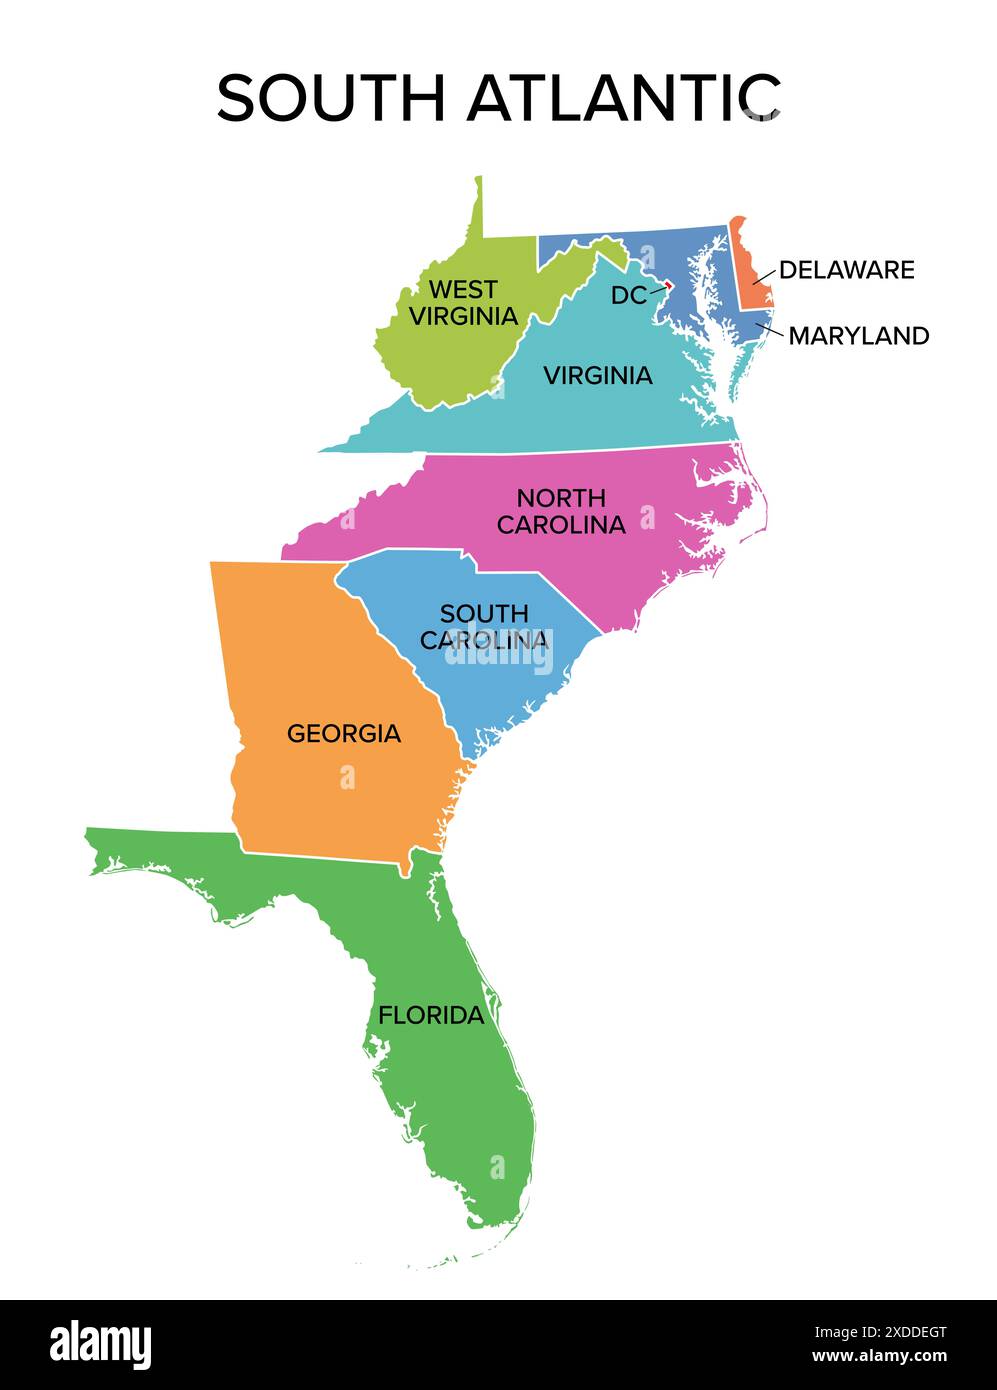 Südatlantische staaten, mehrfarbige politische Karte. United States Census Division of the South Region. Stockfoto